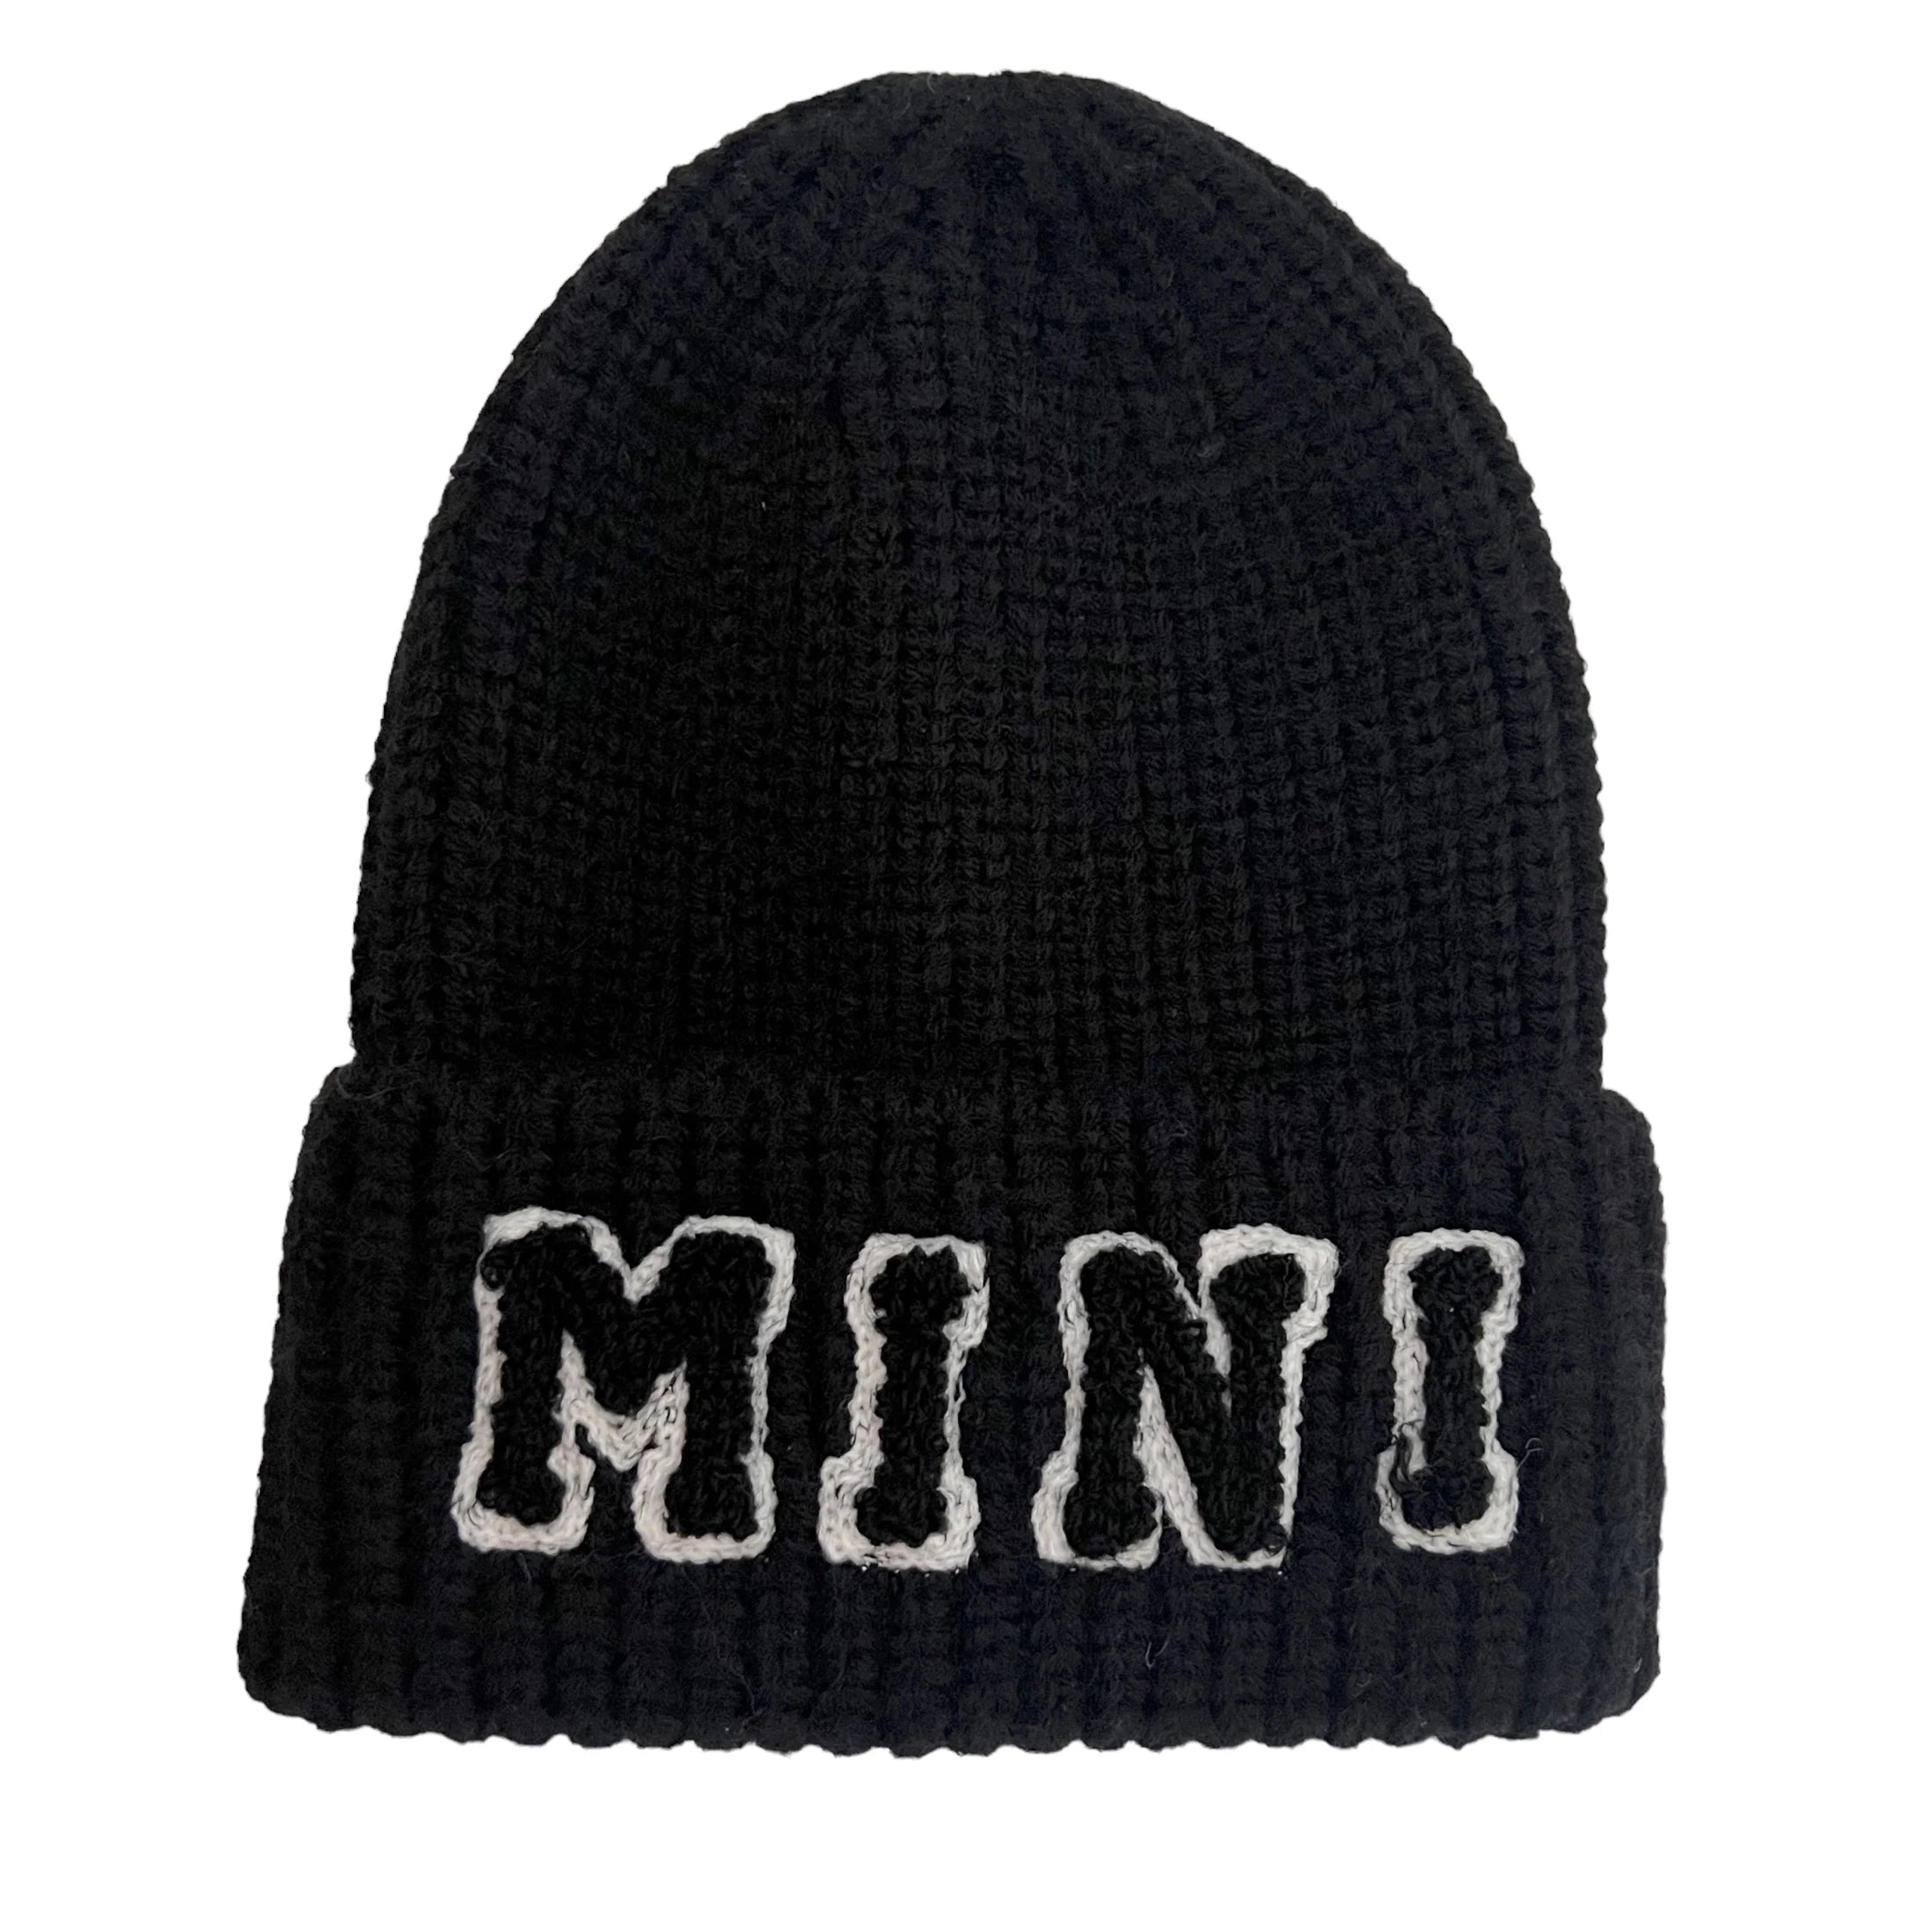 Mini Knit Hat - Twinkle Twinkle Little One